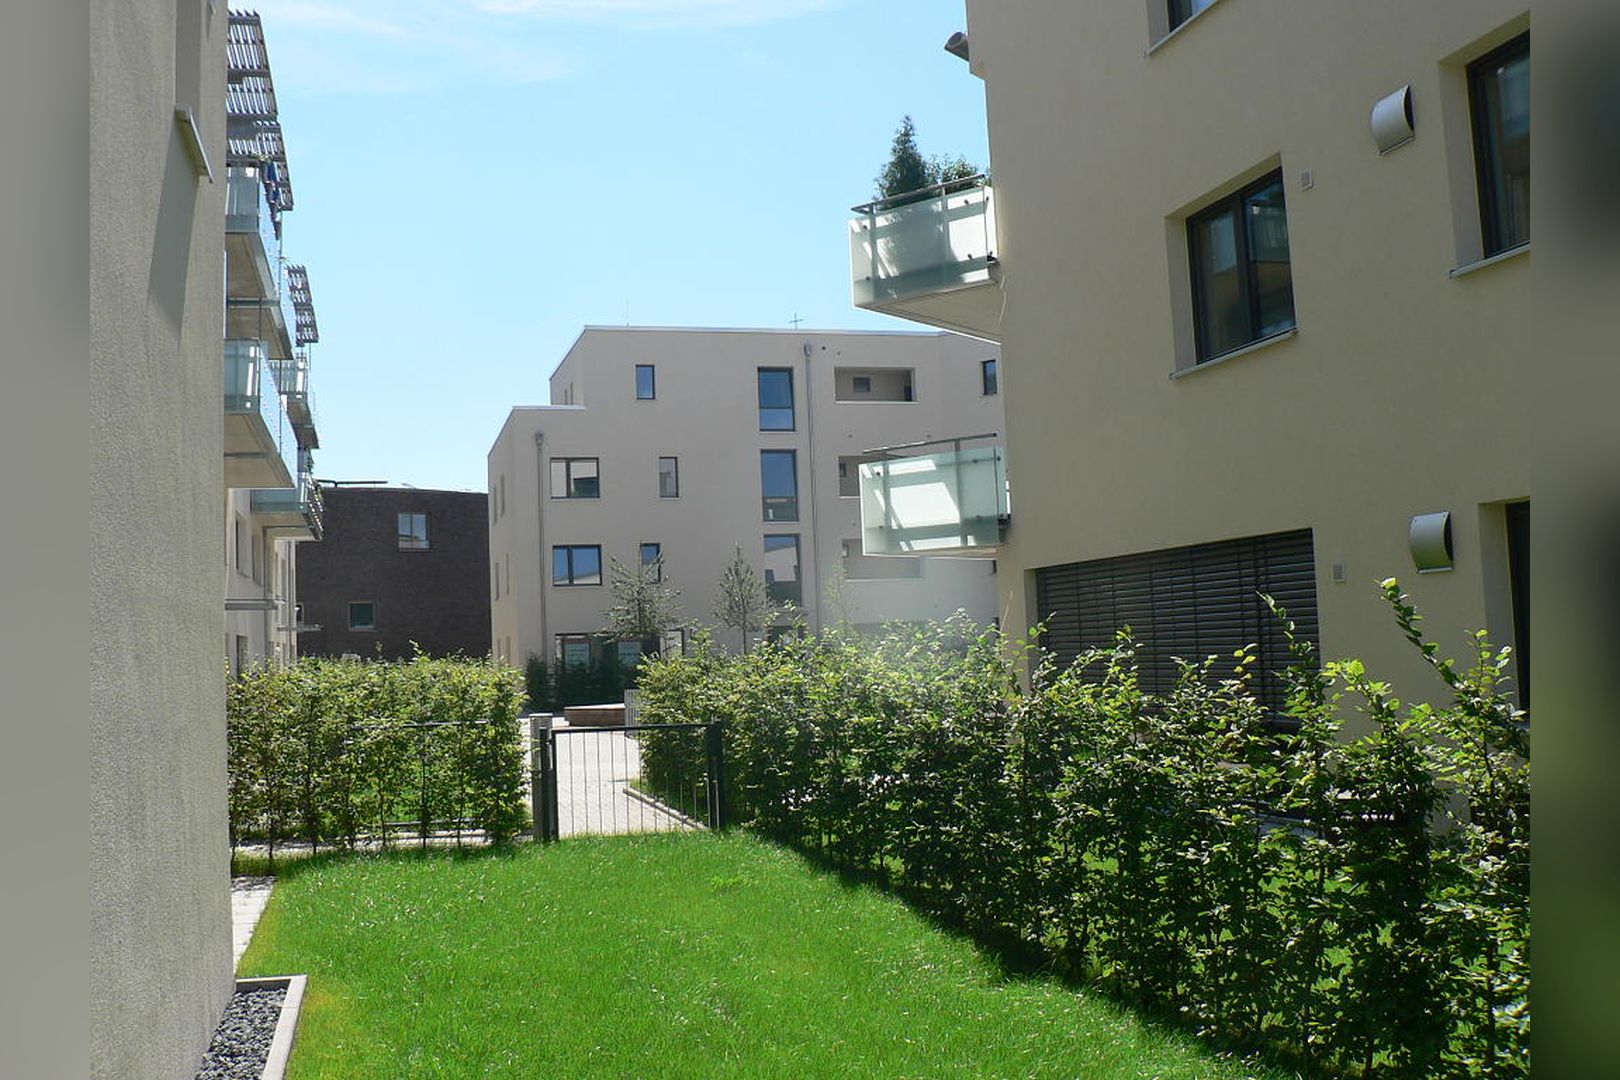 Immobilie Nr.Hilden WE 09 - 4-Zimmer-Garten-Maisonette-Wohnung mit Garten, Aufzug und TG-Stellplatz - Bild 12.jpg